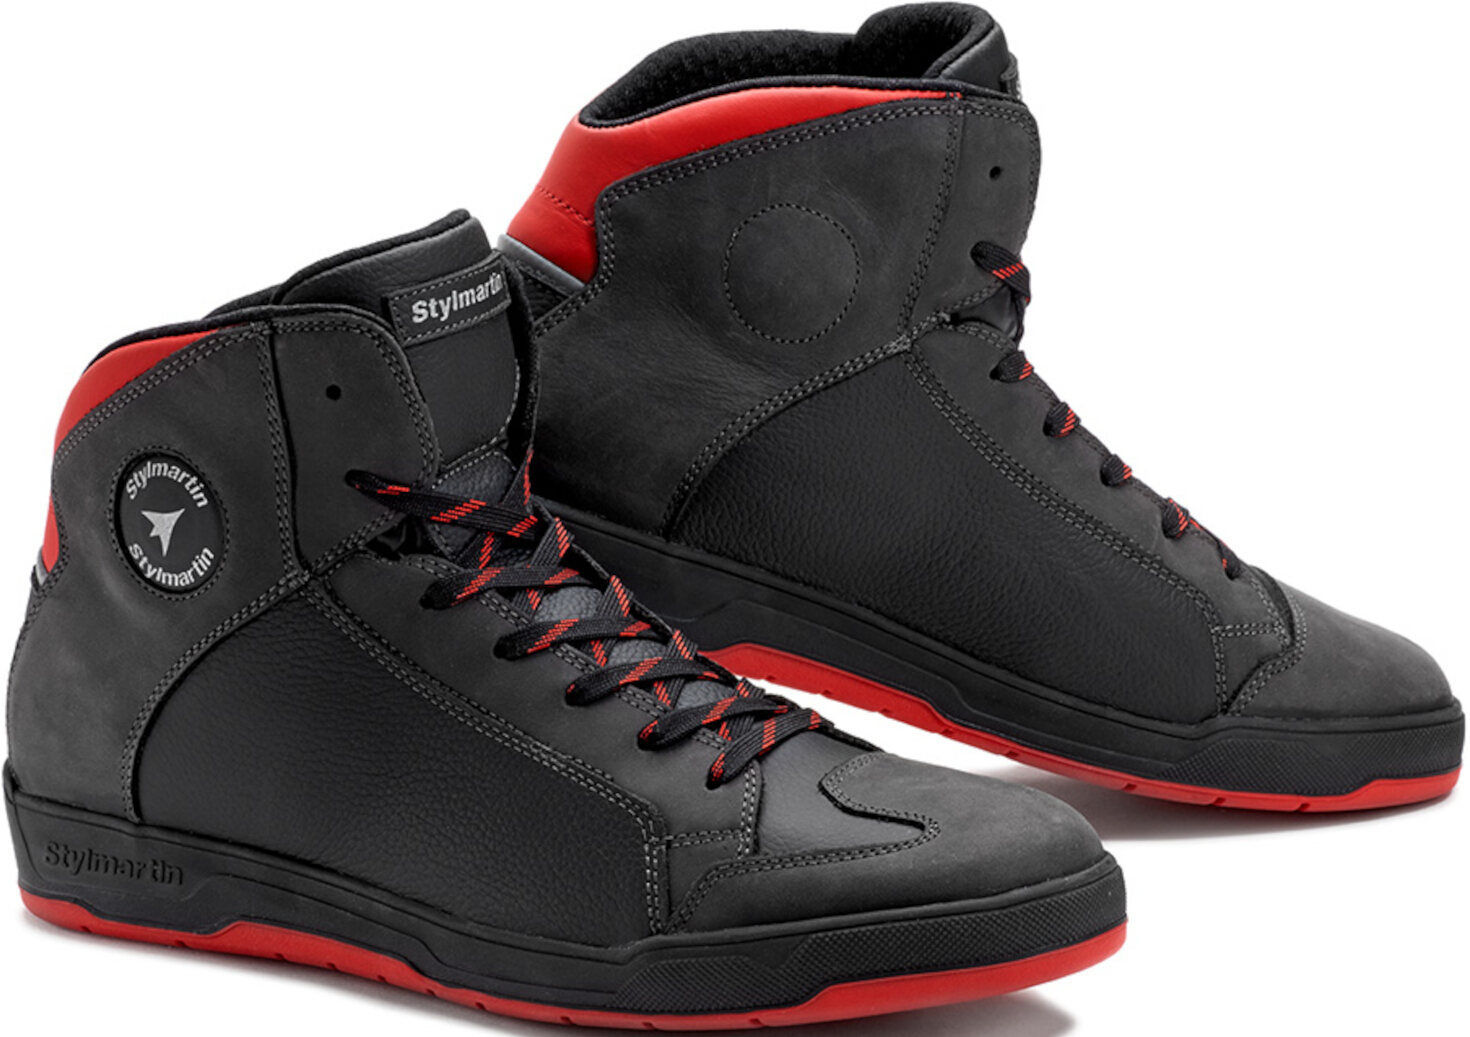 Stylmartin Double Zapatos de motocicleta impermeables - Negro Rojo (43)